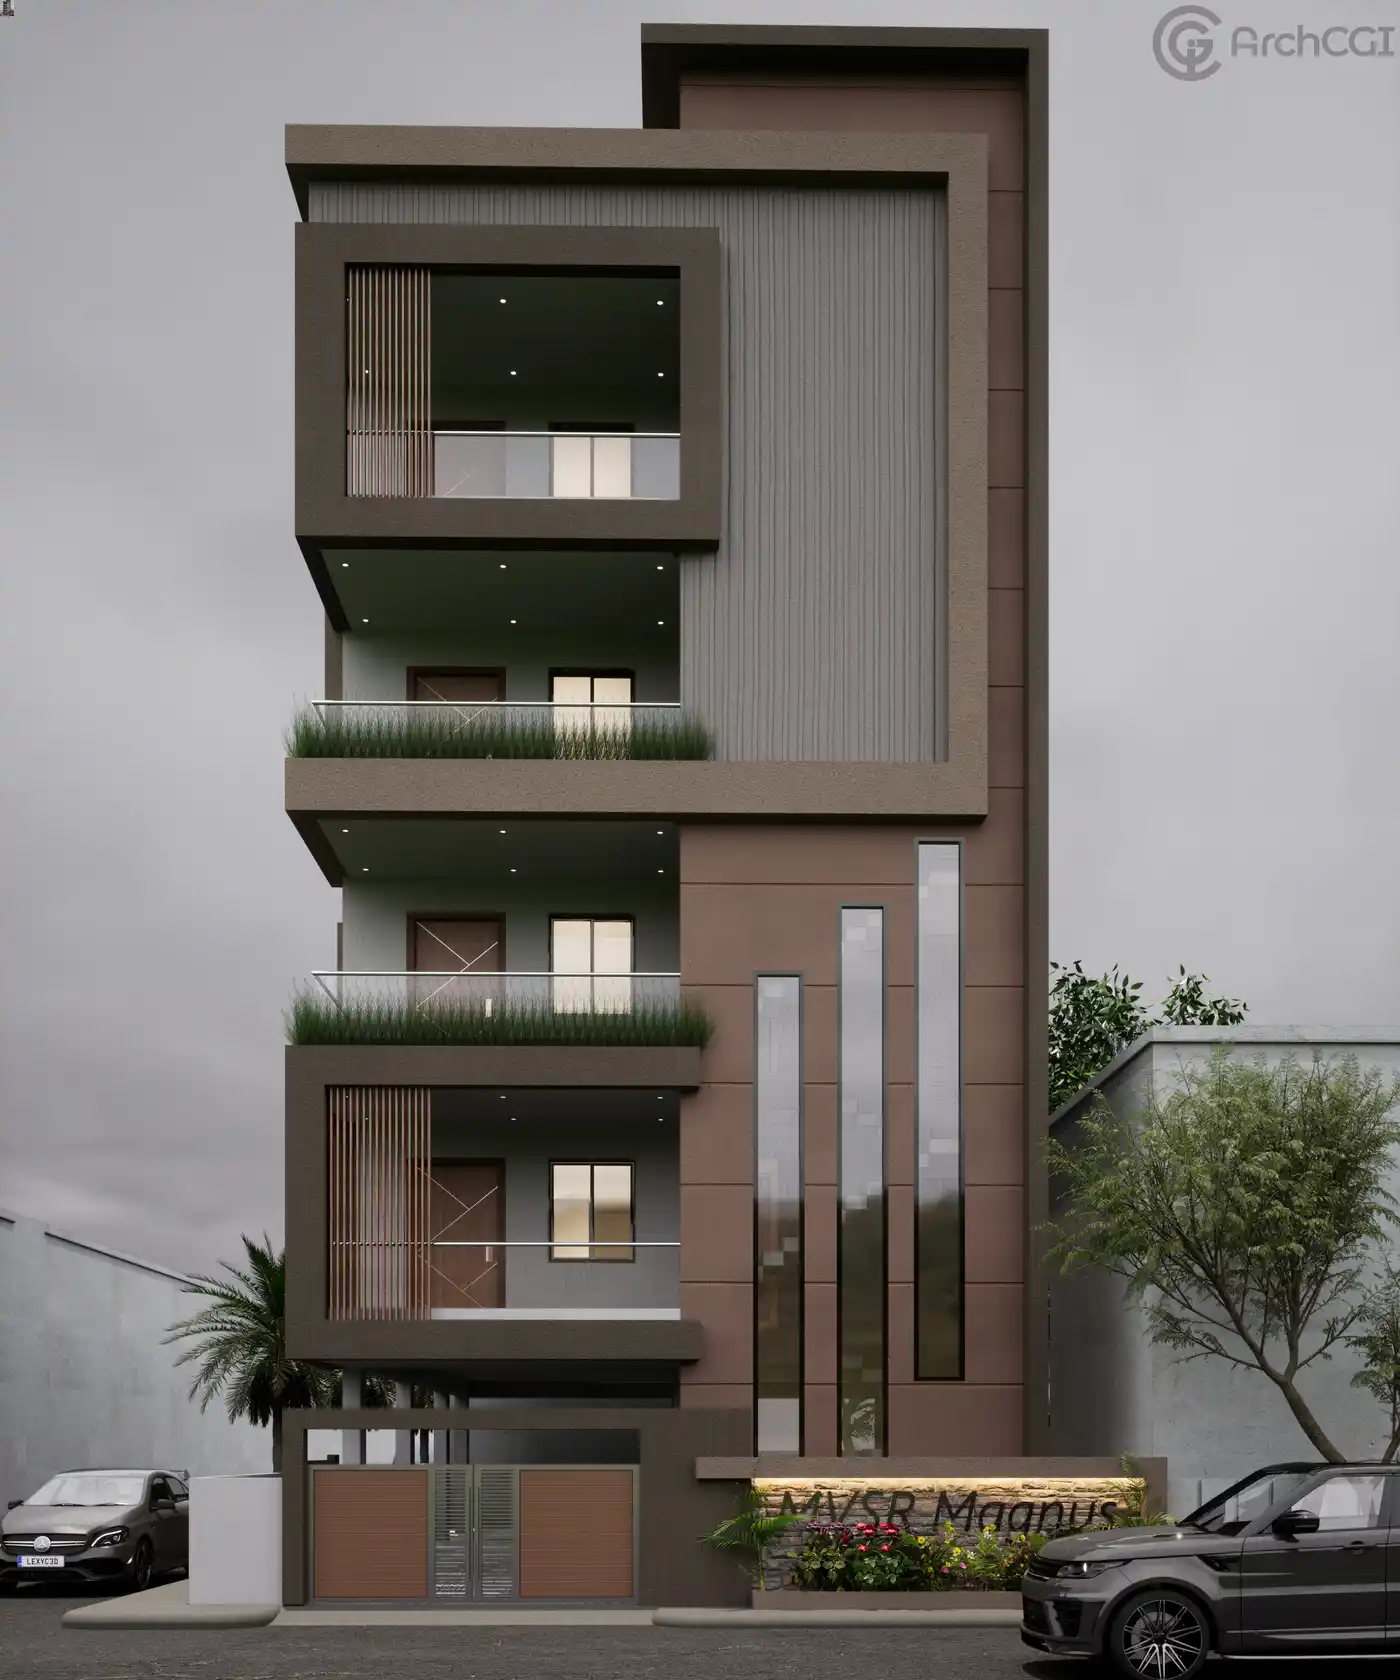 Condo Design Inspiration | Indian Apartment Design basics | Best Exterior idea | ArchCGI